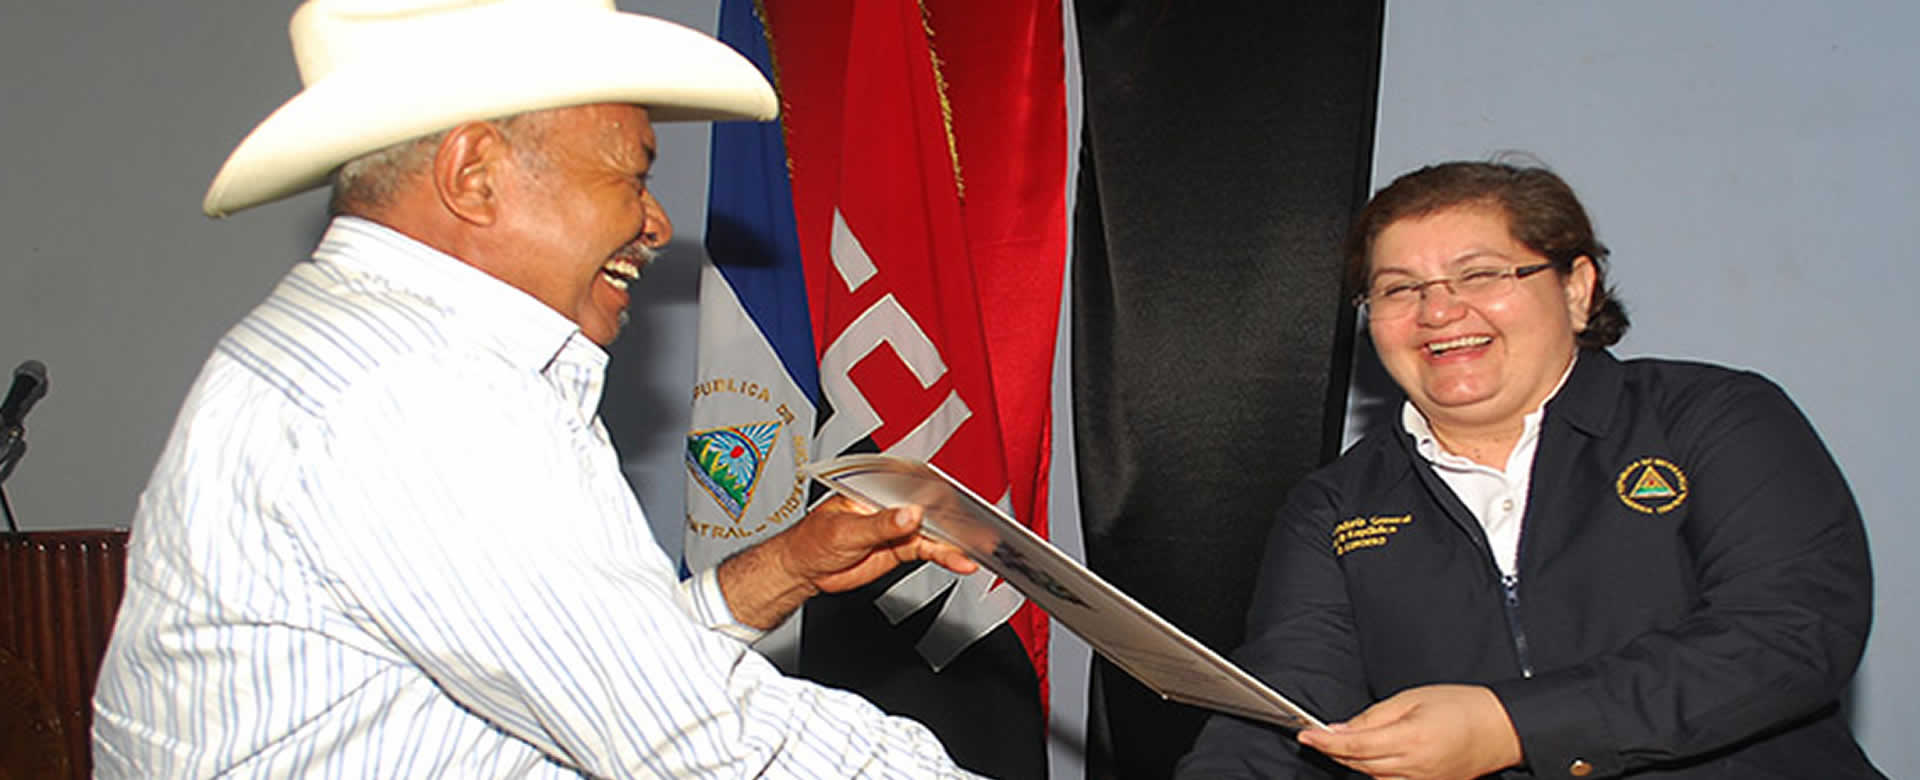 Gobierno de Nicaragua entrega títulos de propiedad a retirados del ejército